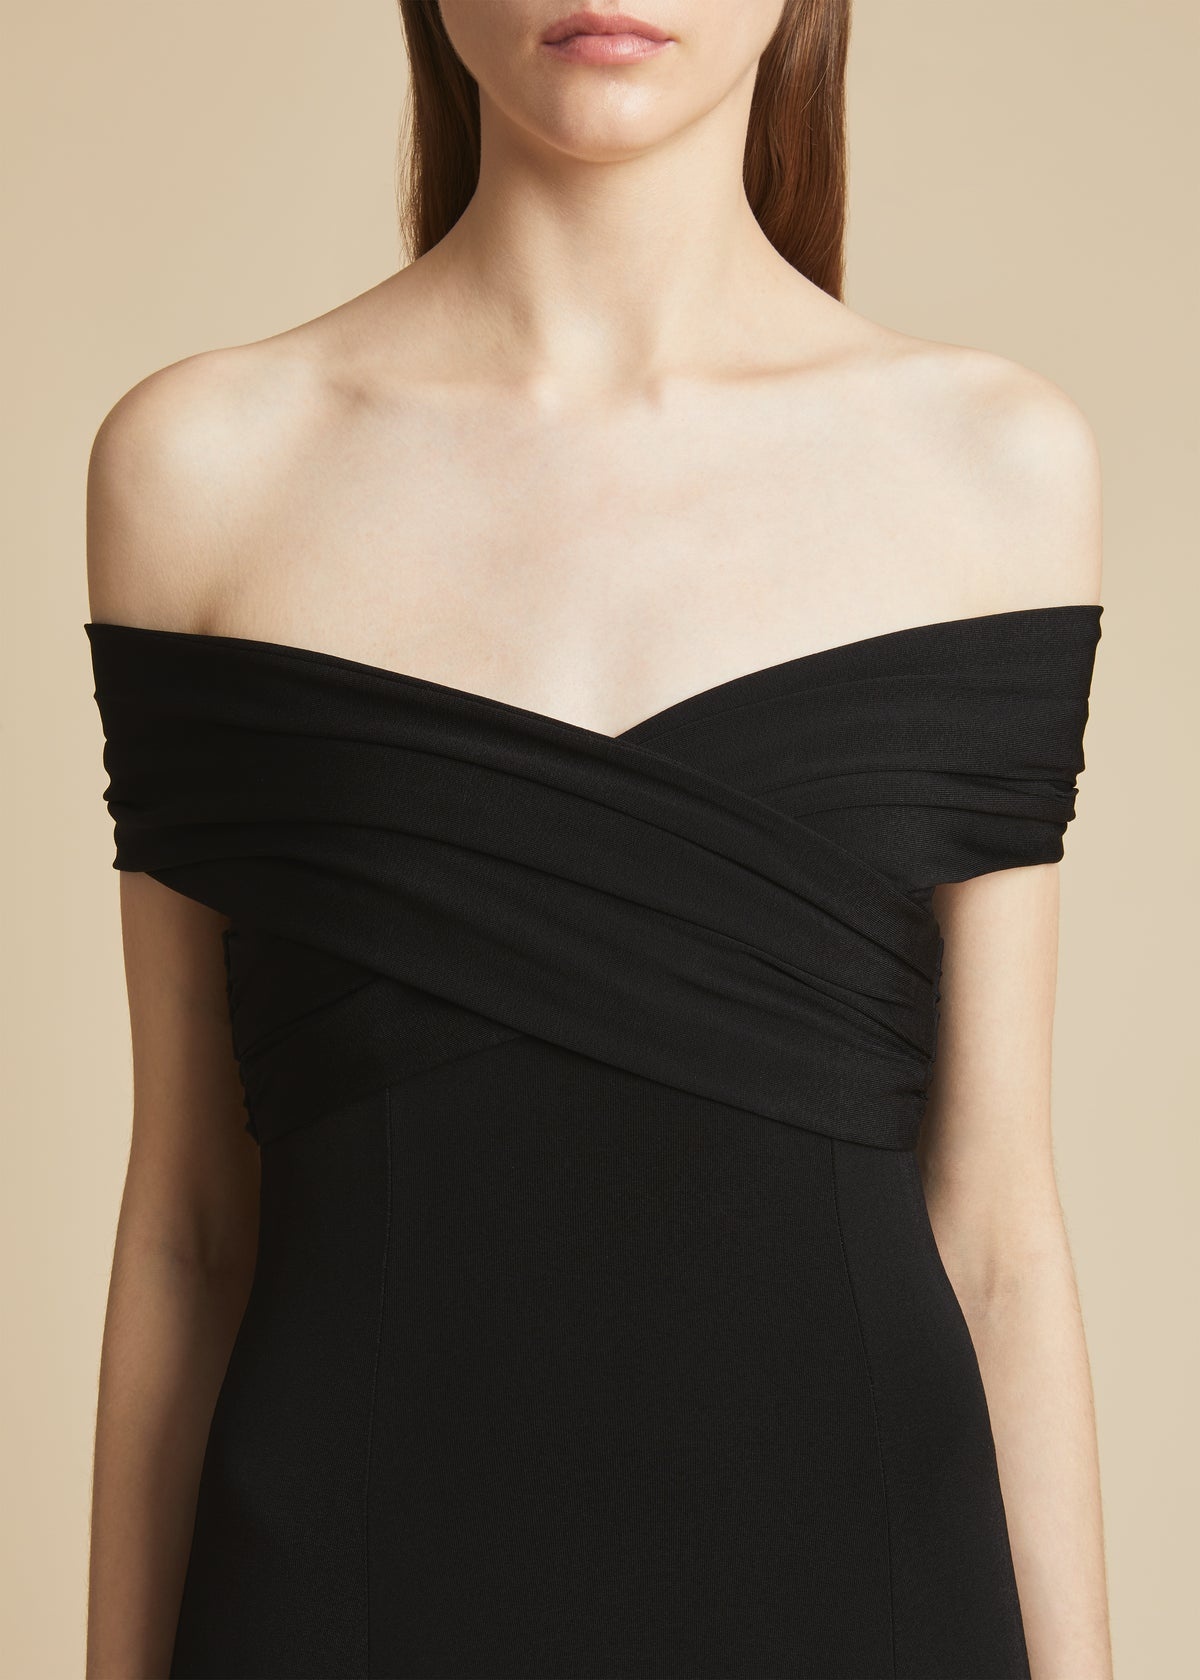 The Bruna Dress in Black - 5